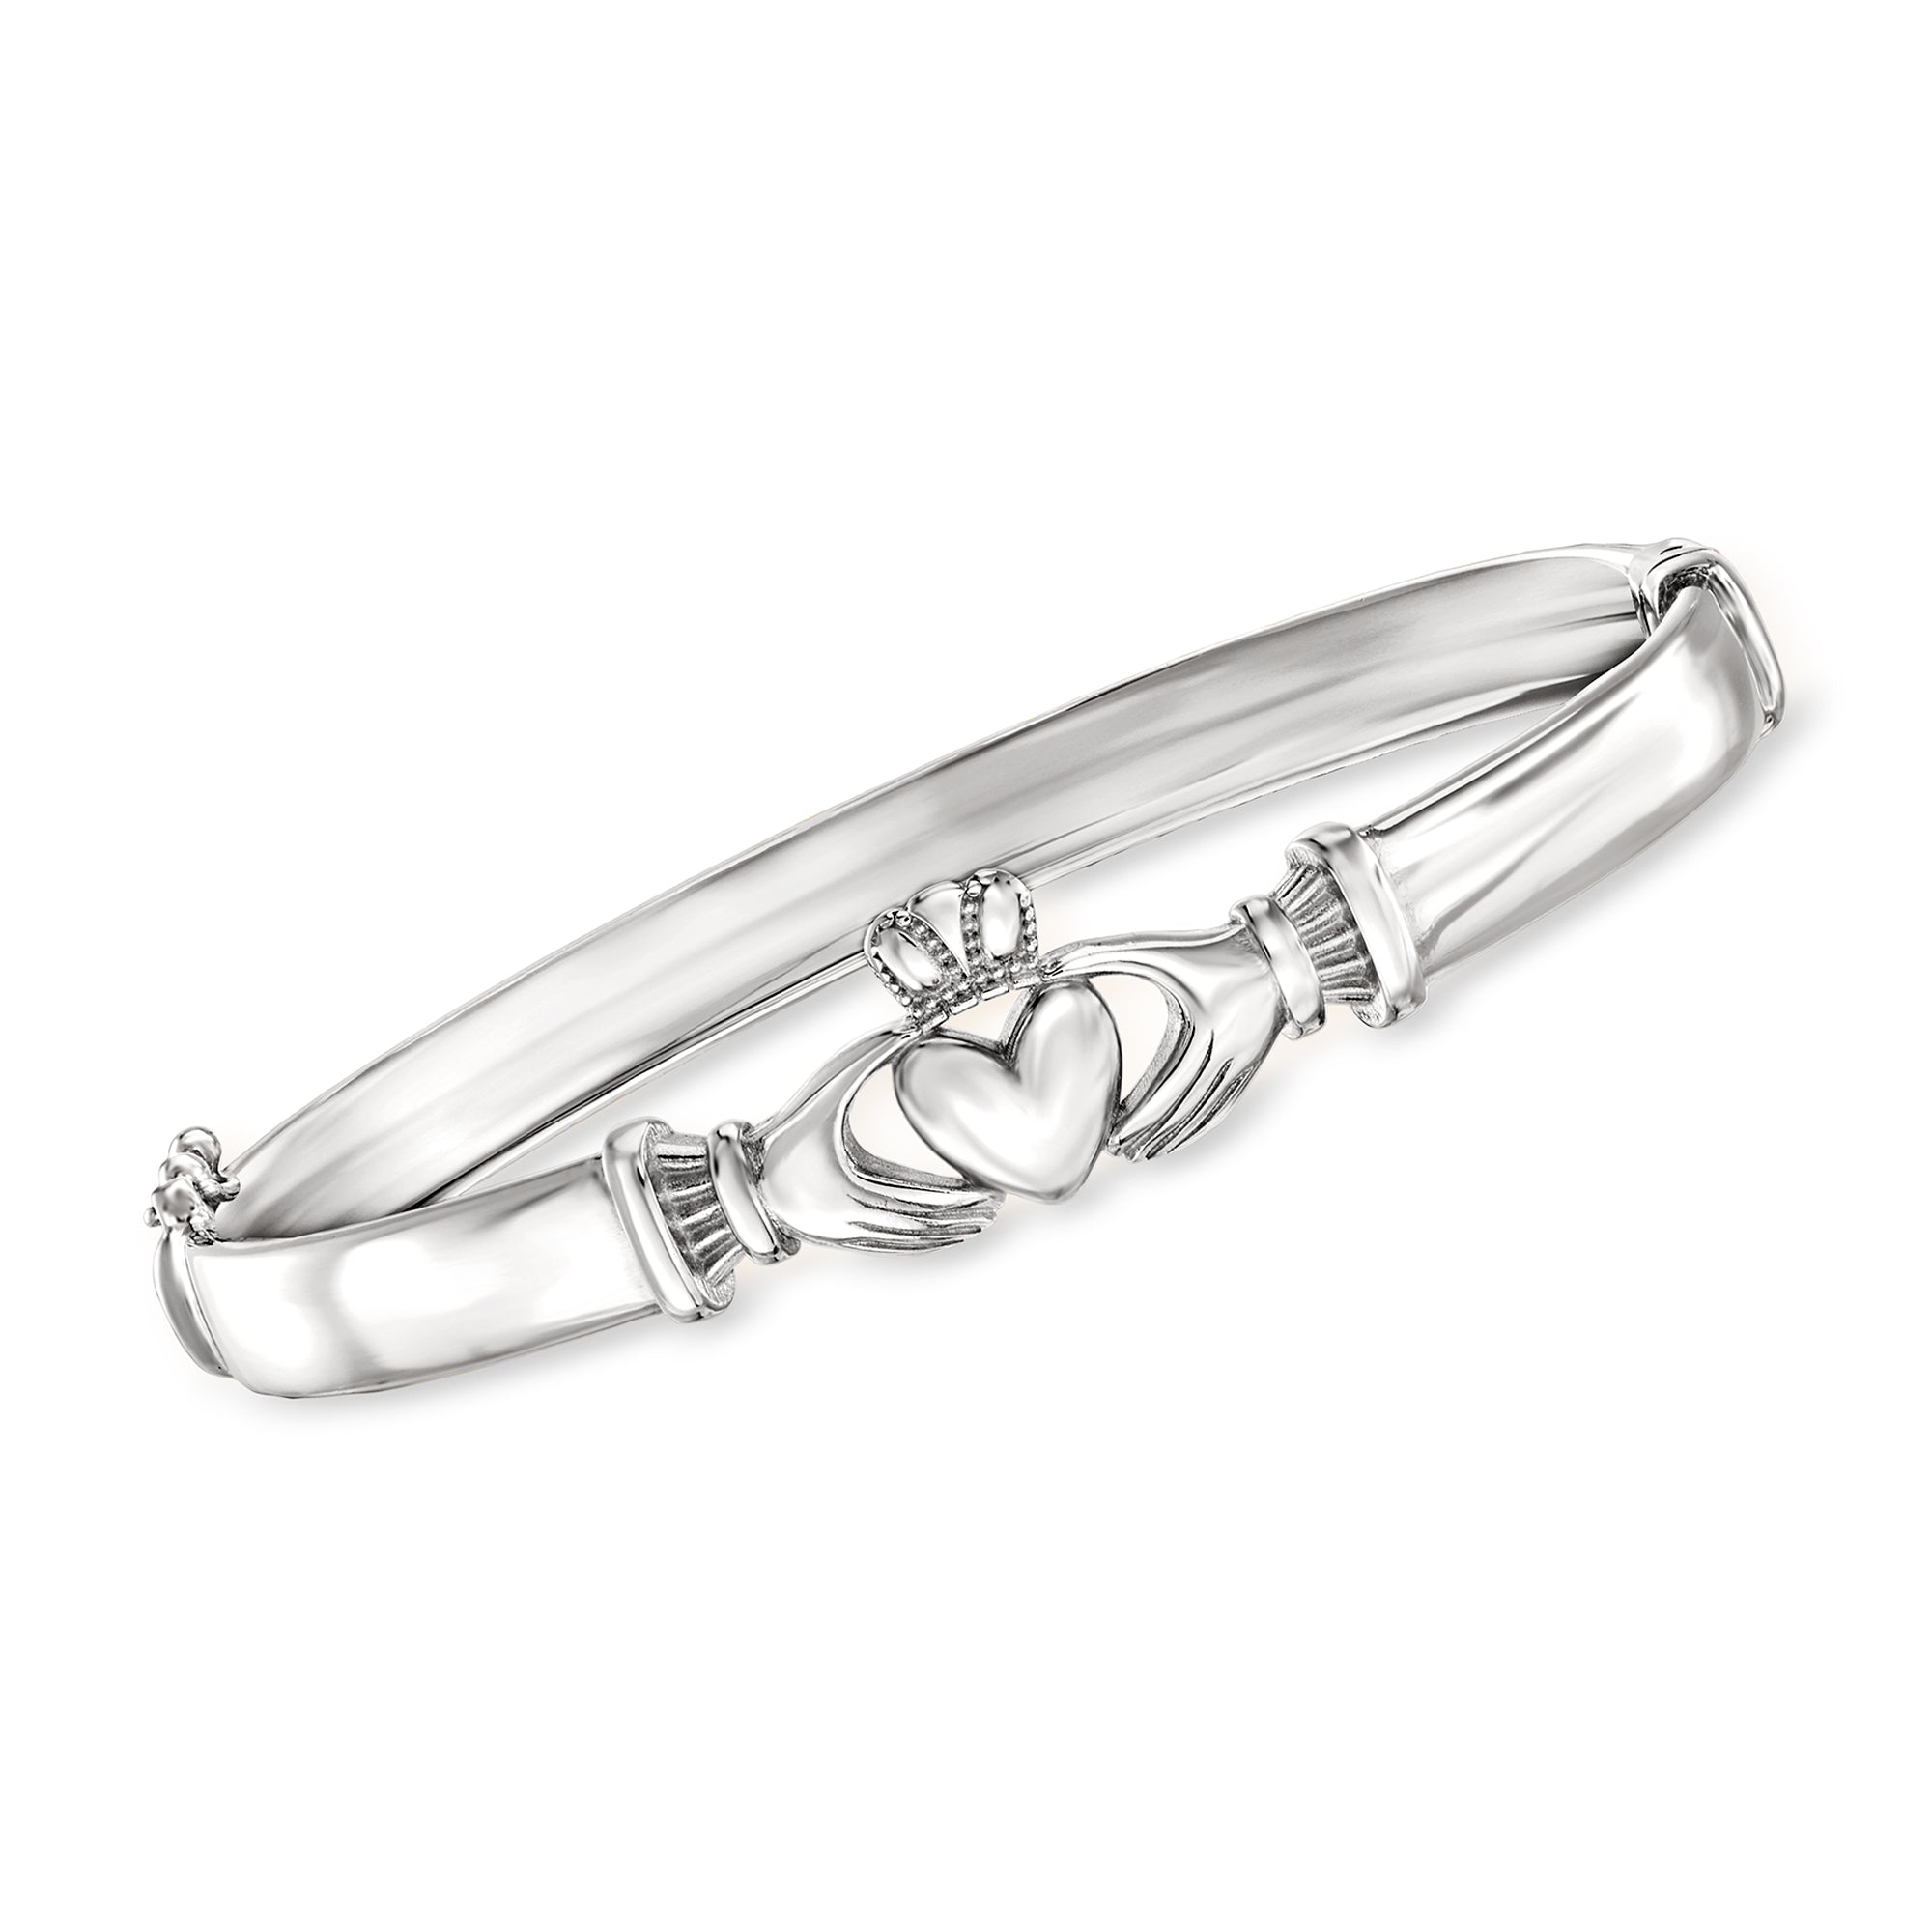 Ross-simons Sterling Silver Claddagh Bangle Bracelet In Metallic